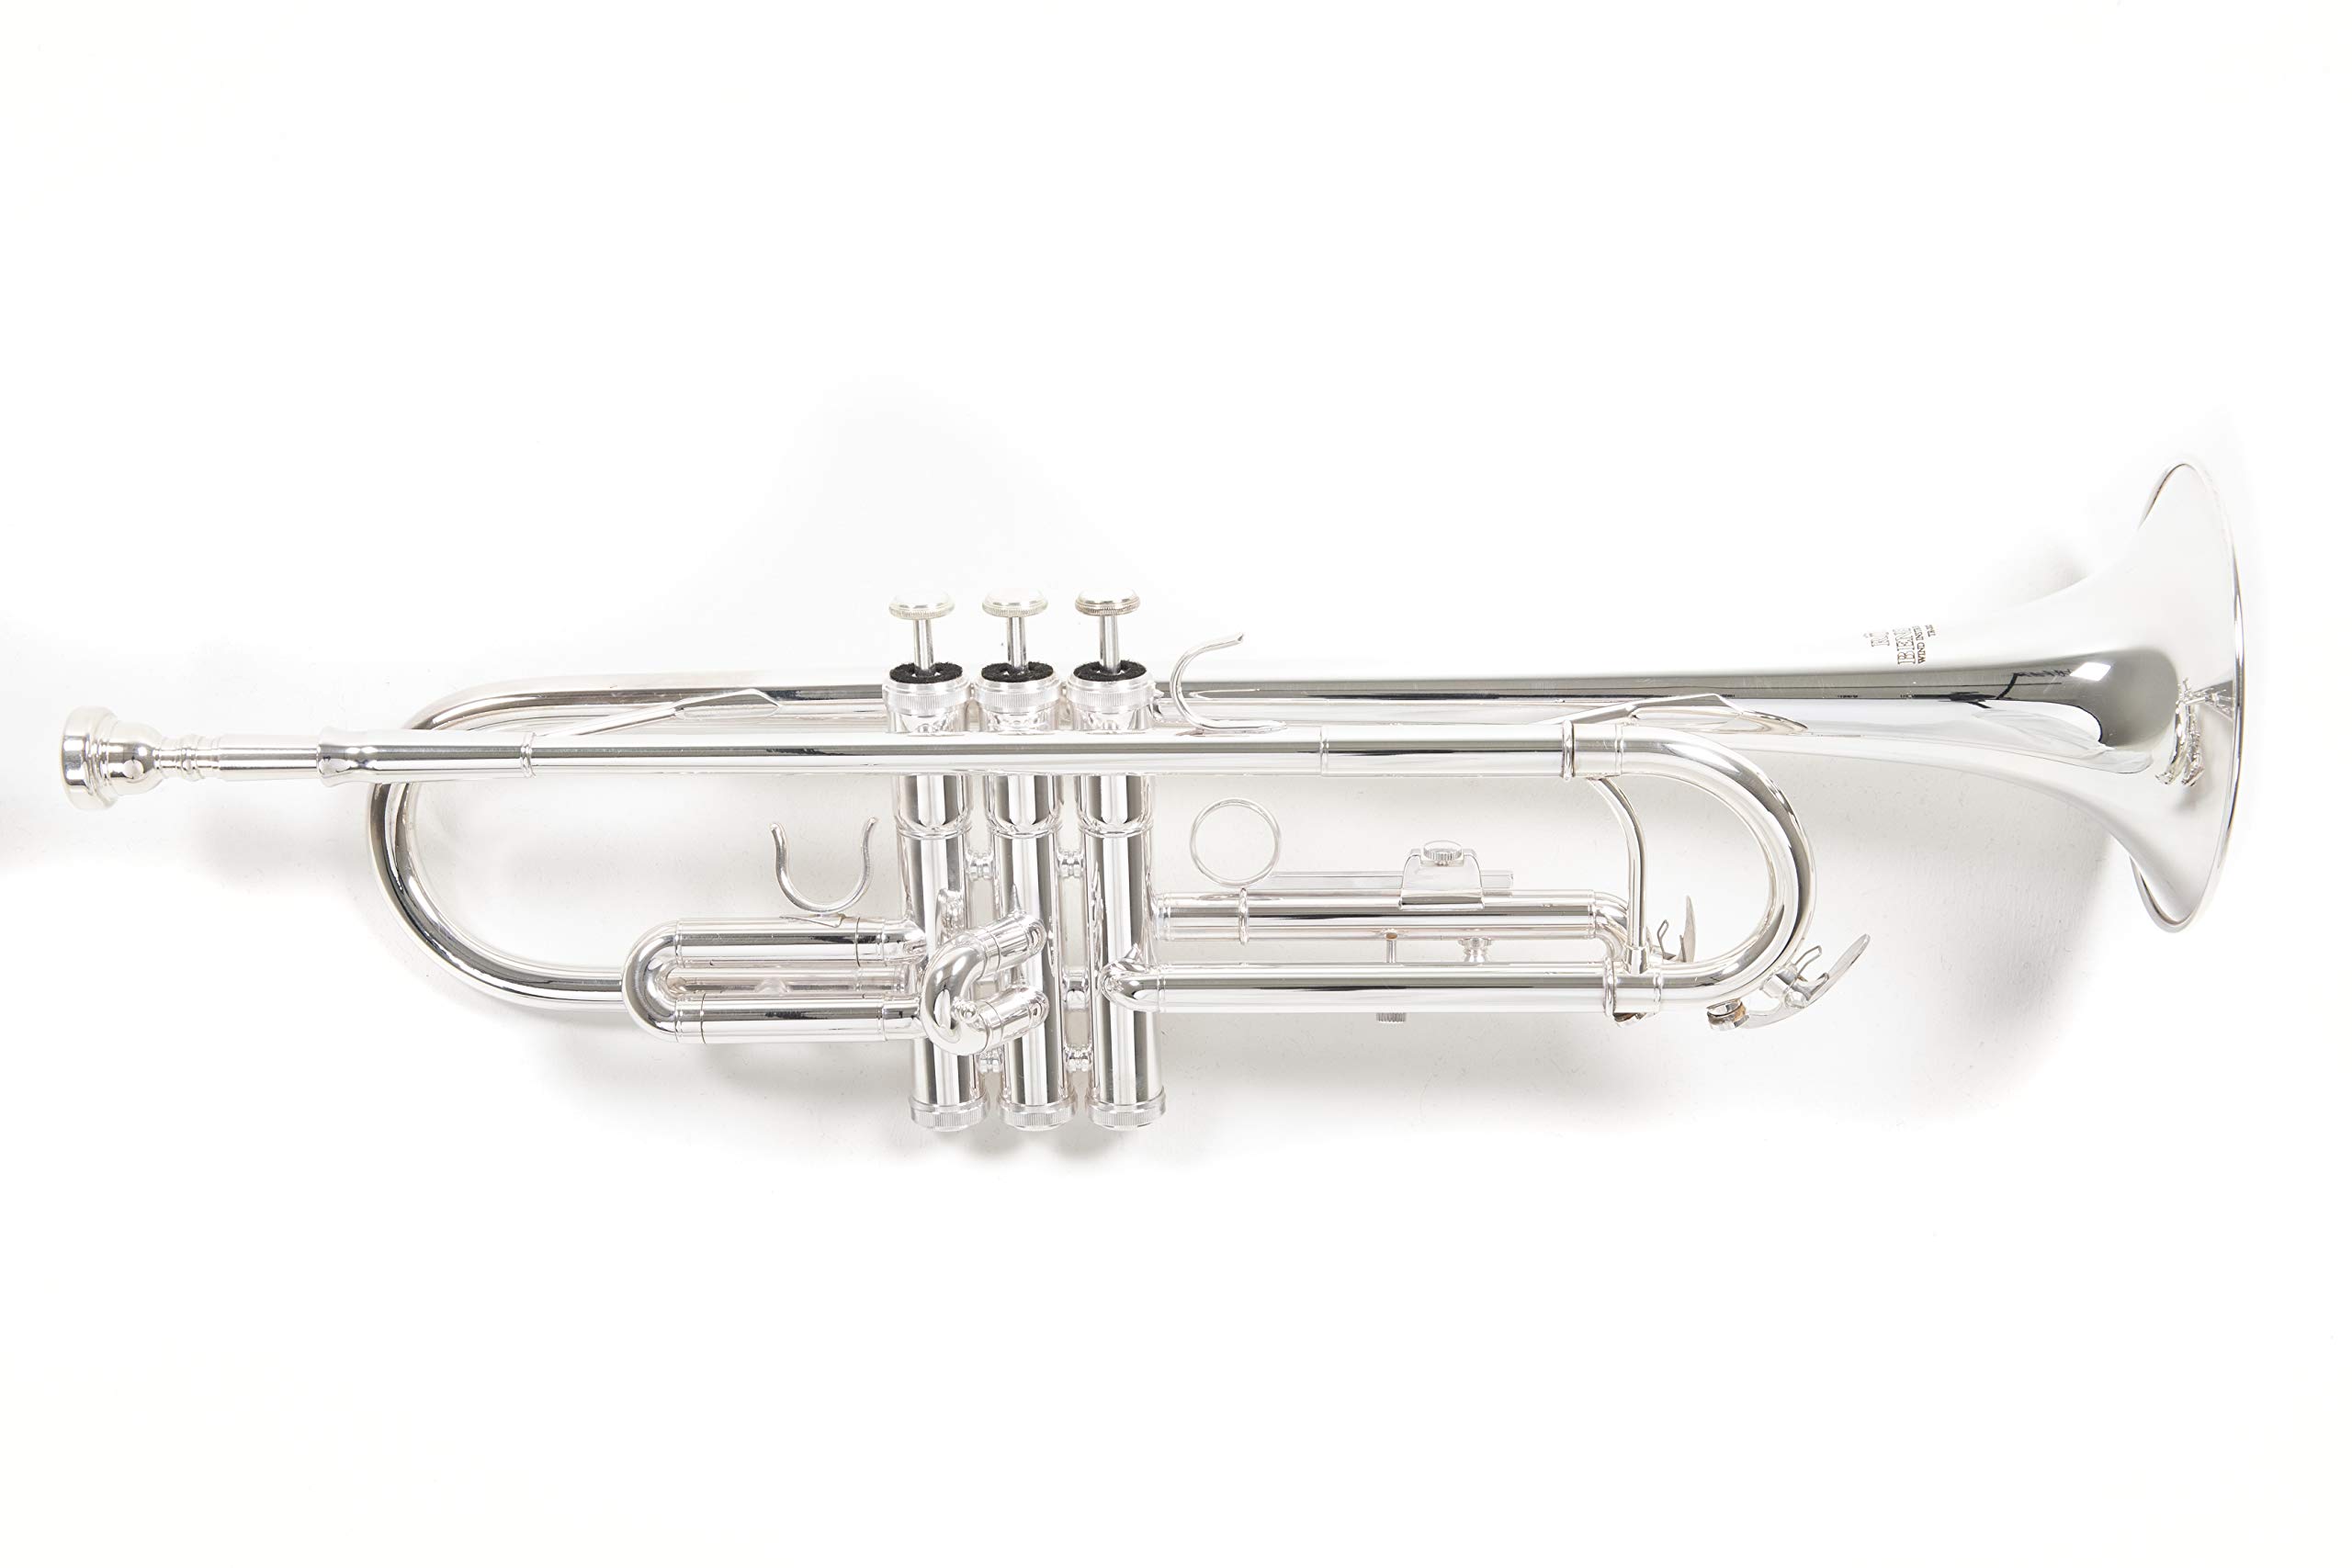 Roy Benson Bb-Trompete TR-202S (Langlebige Messingkonstruktion, mit leichtem Rechtecketui, Rucksackgarnitur, erstklassige Edelstahl Ventile, für professionelle Musiker), versilbert